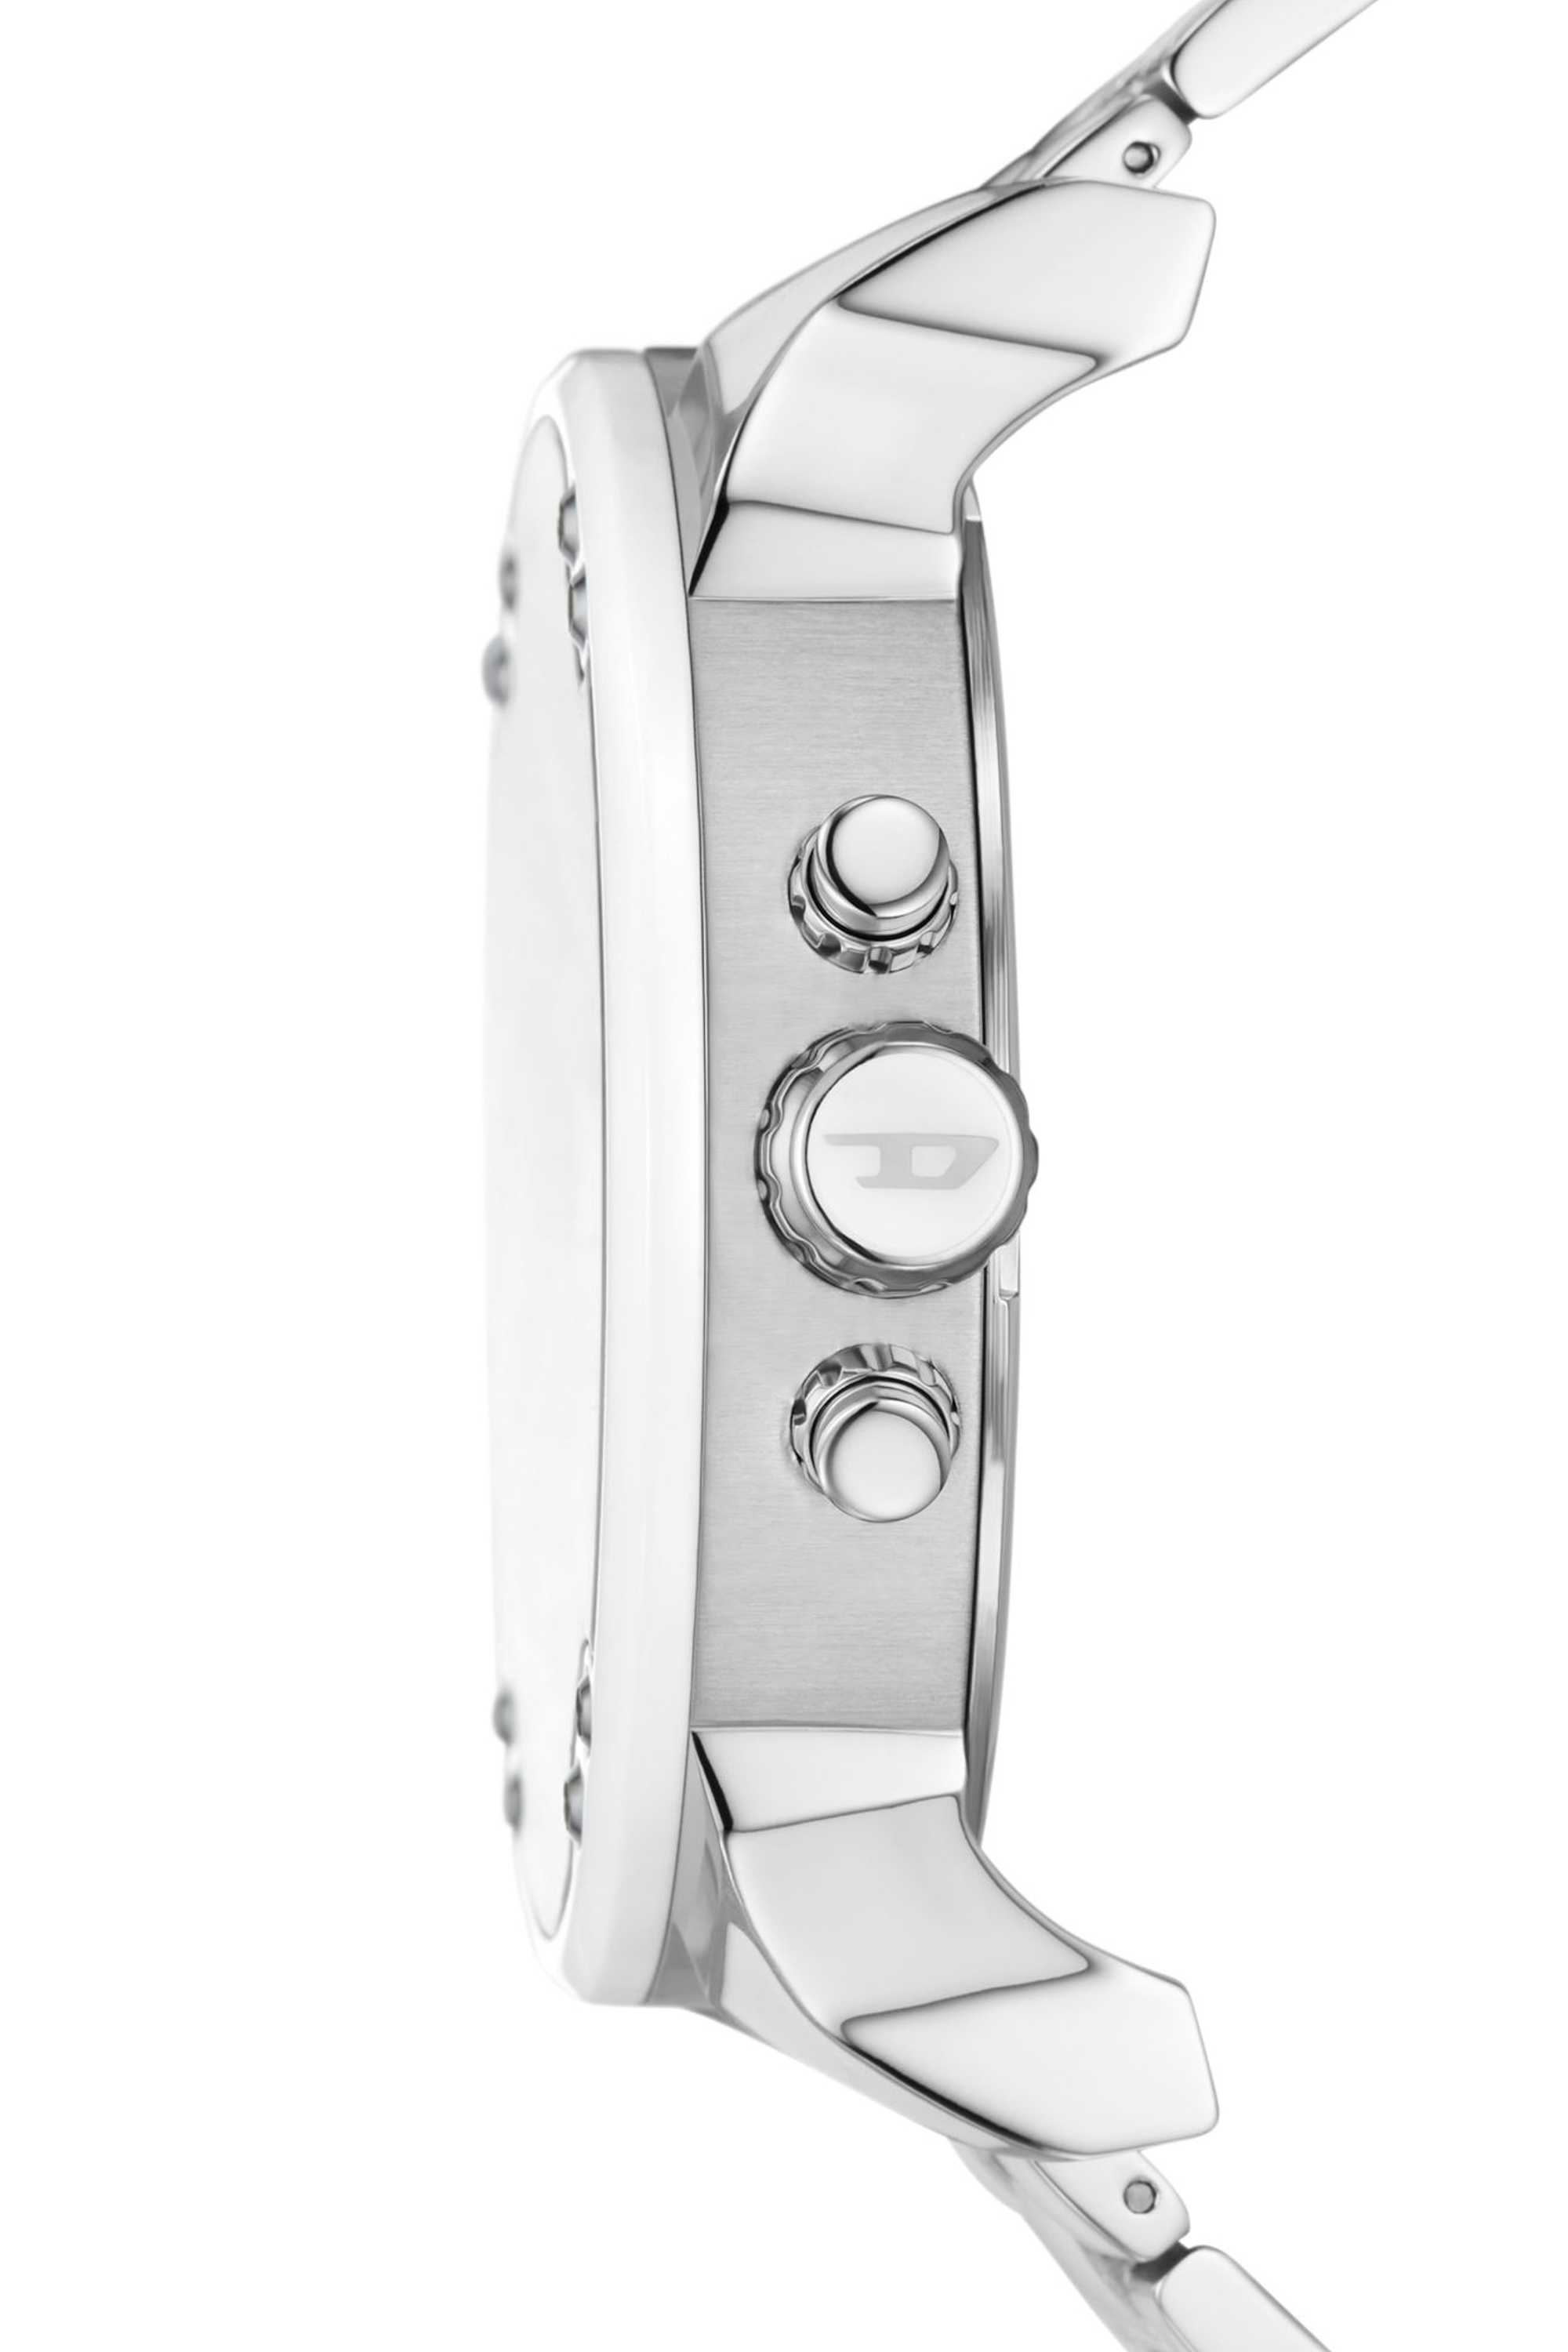 Diesel - DZ7481, Herren Mr. Daddy 2.0 Armbanduhr aus Edelstahl mit weißen Akzenten in Silber - Image 3